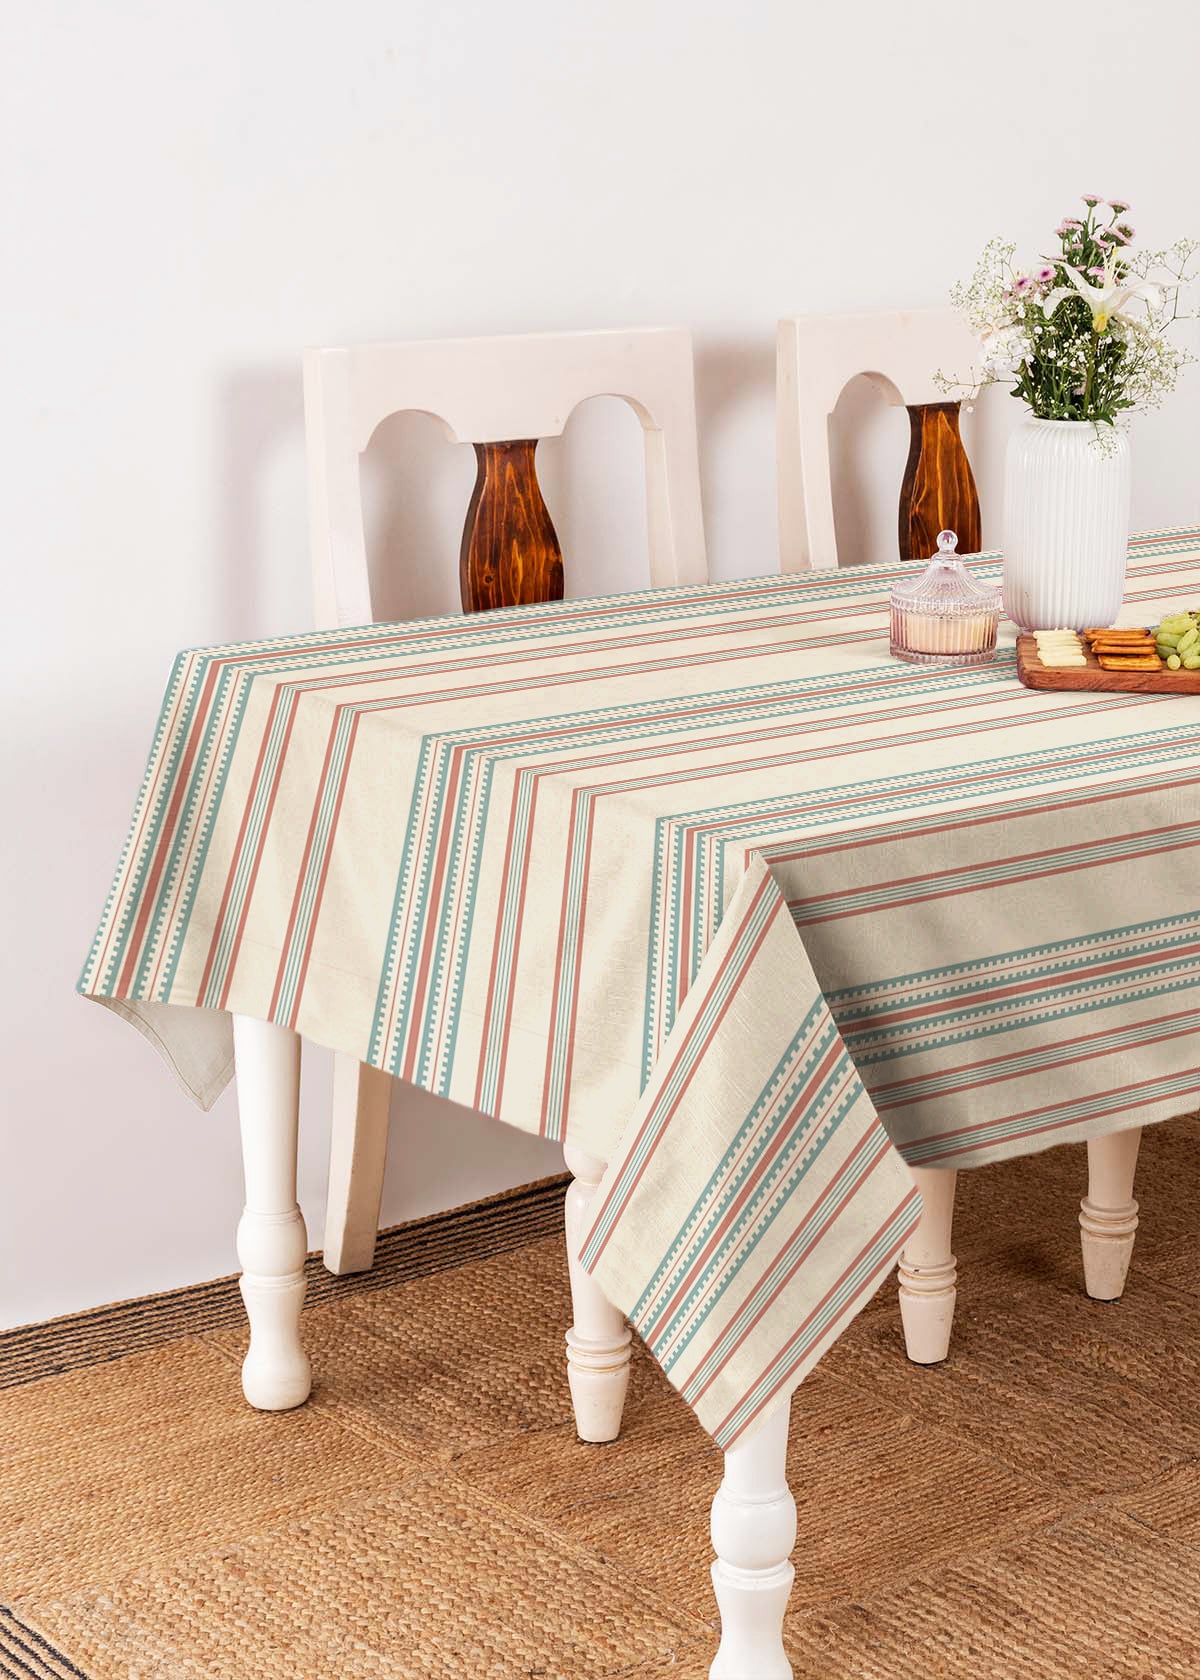 Roman Stripes Printed Cotton Table Cloth - Multicolor